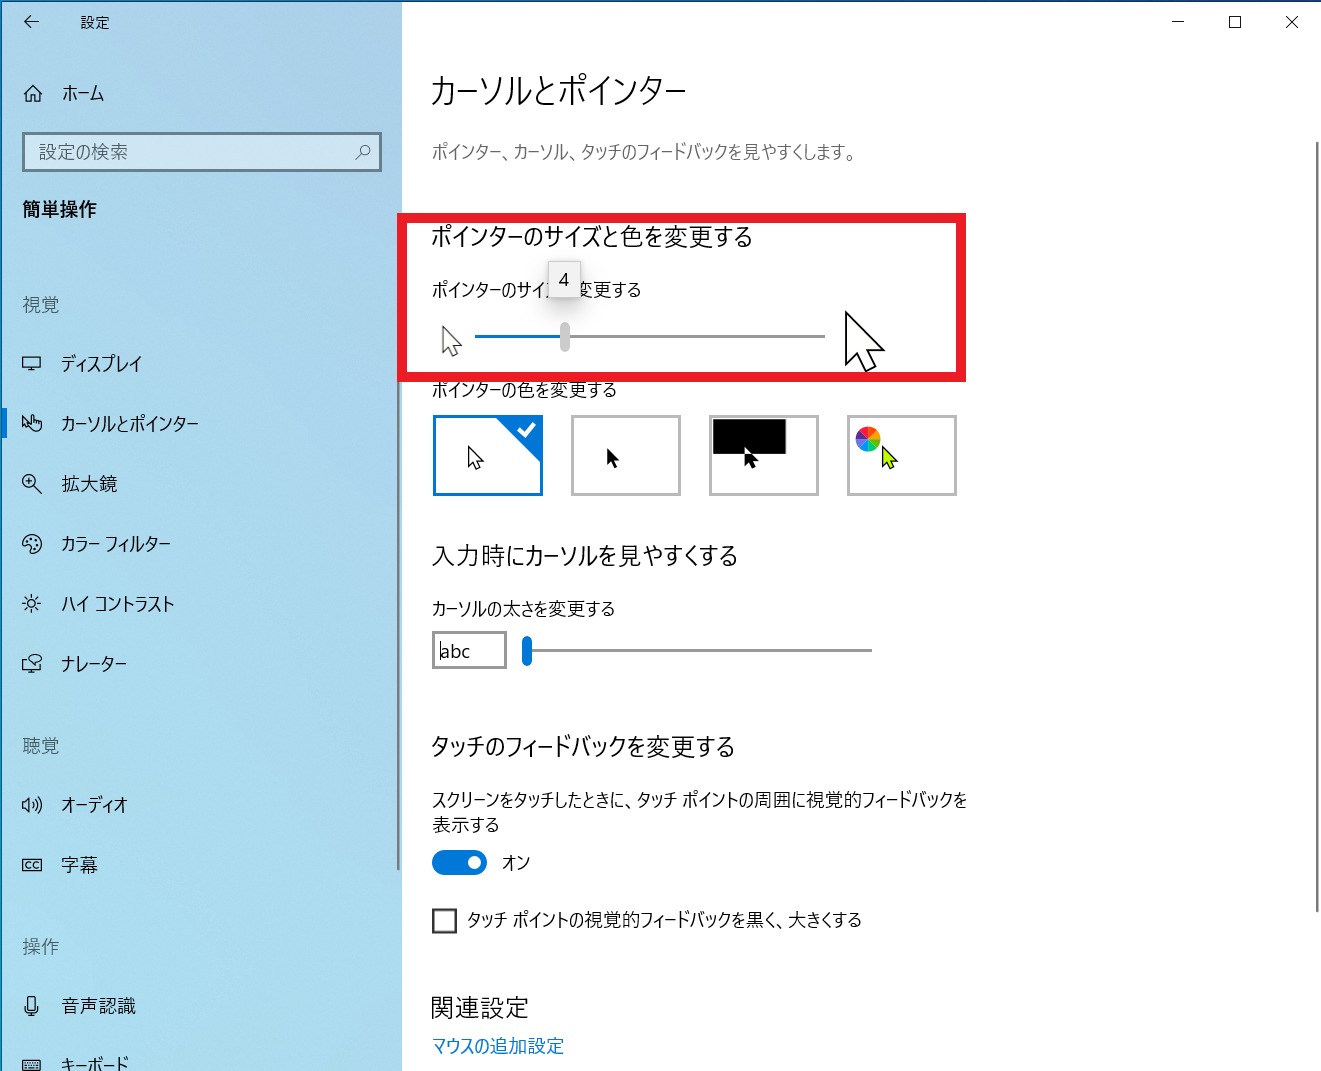 【業務効率UP】マウスアイコンを見やすくする方法【Windows10】